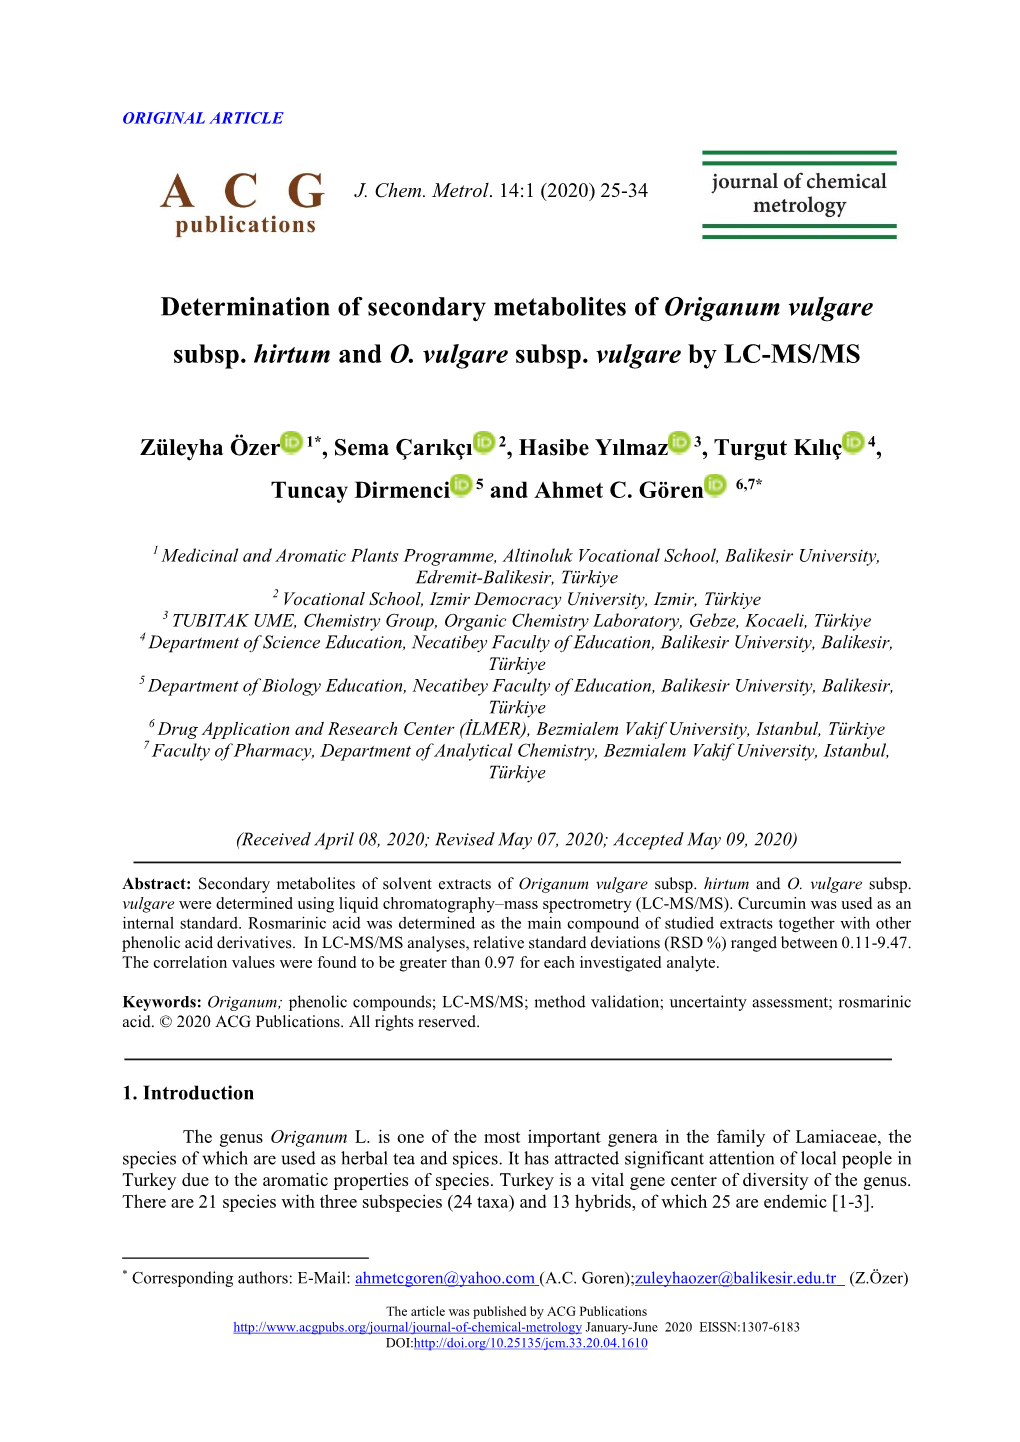 Determination of Secondary Metabolites of Origanum Vulgare Subsp